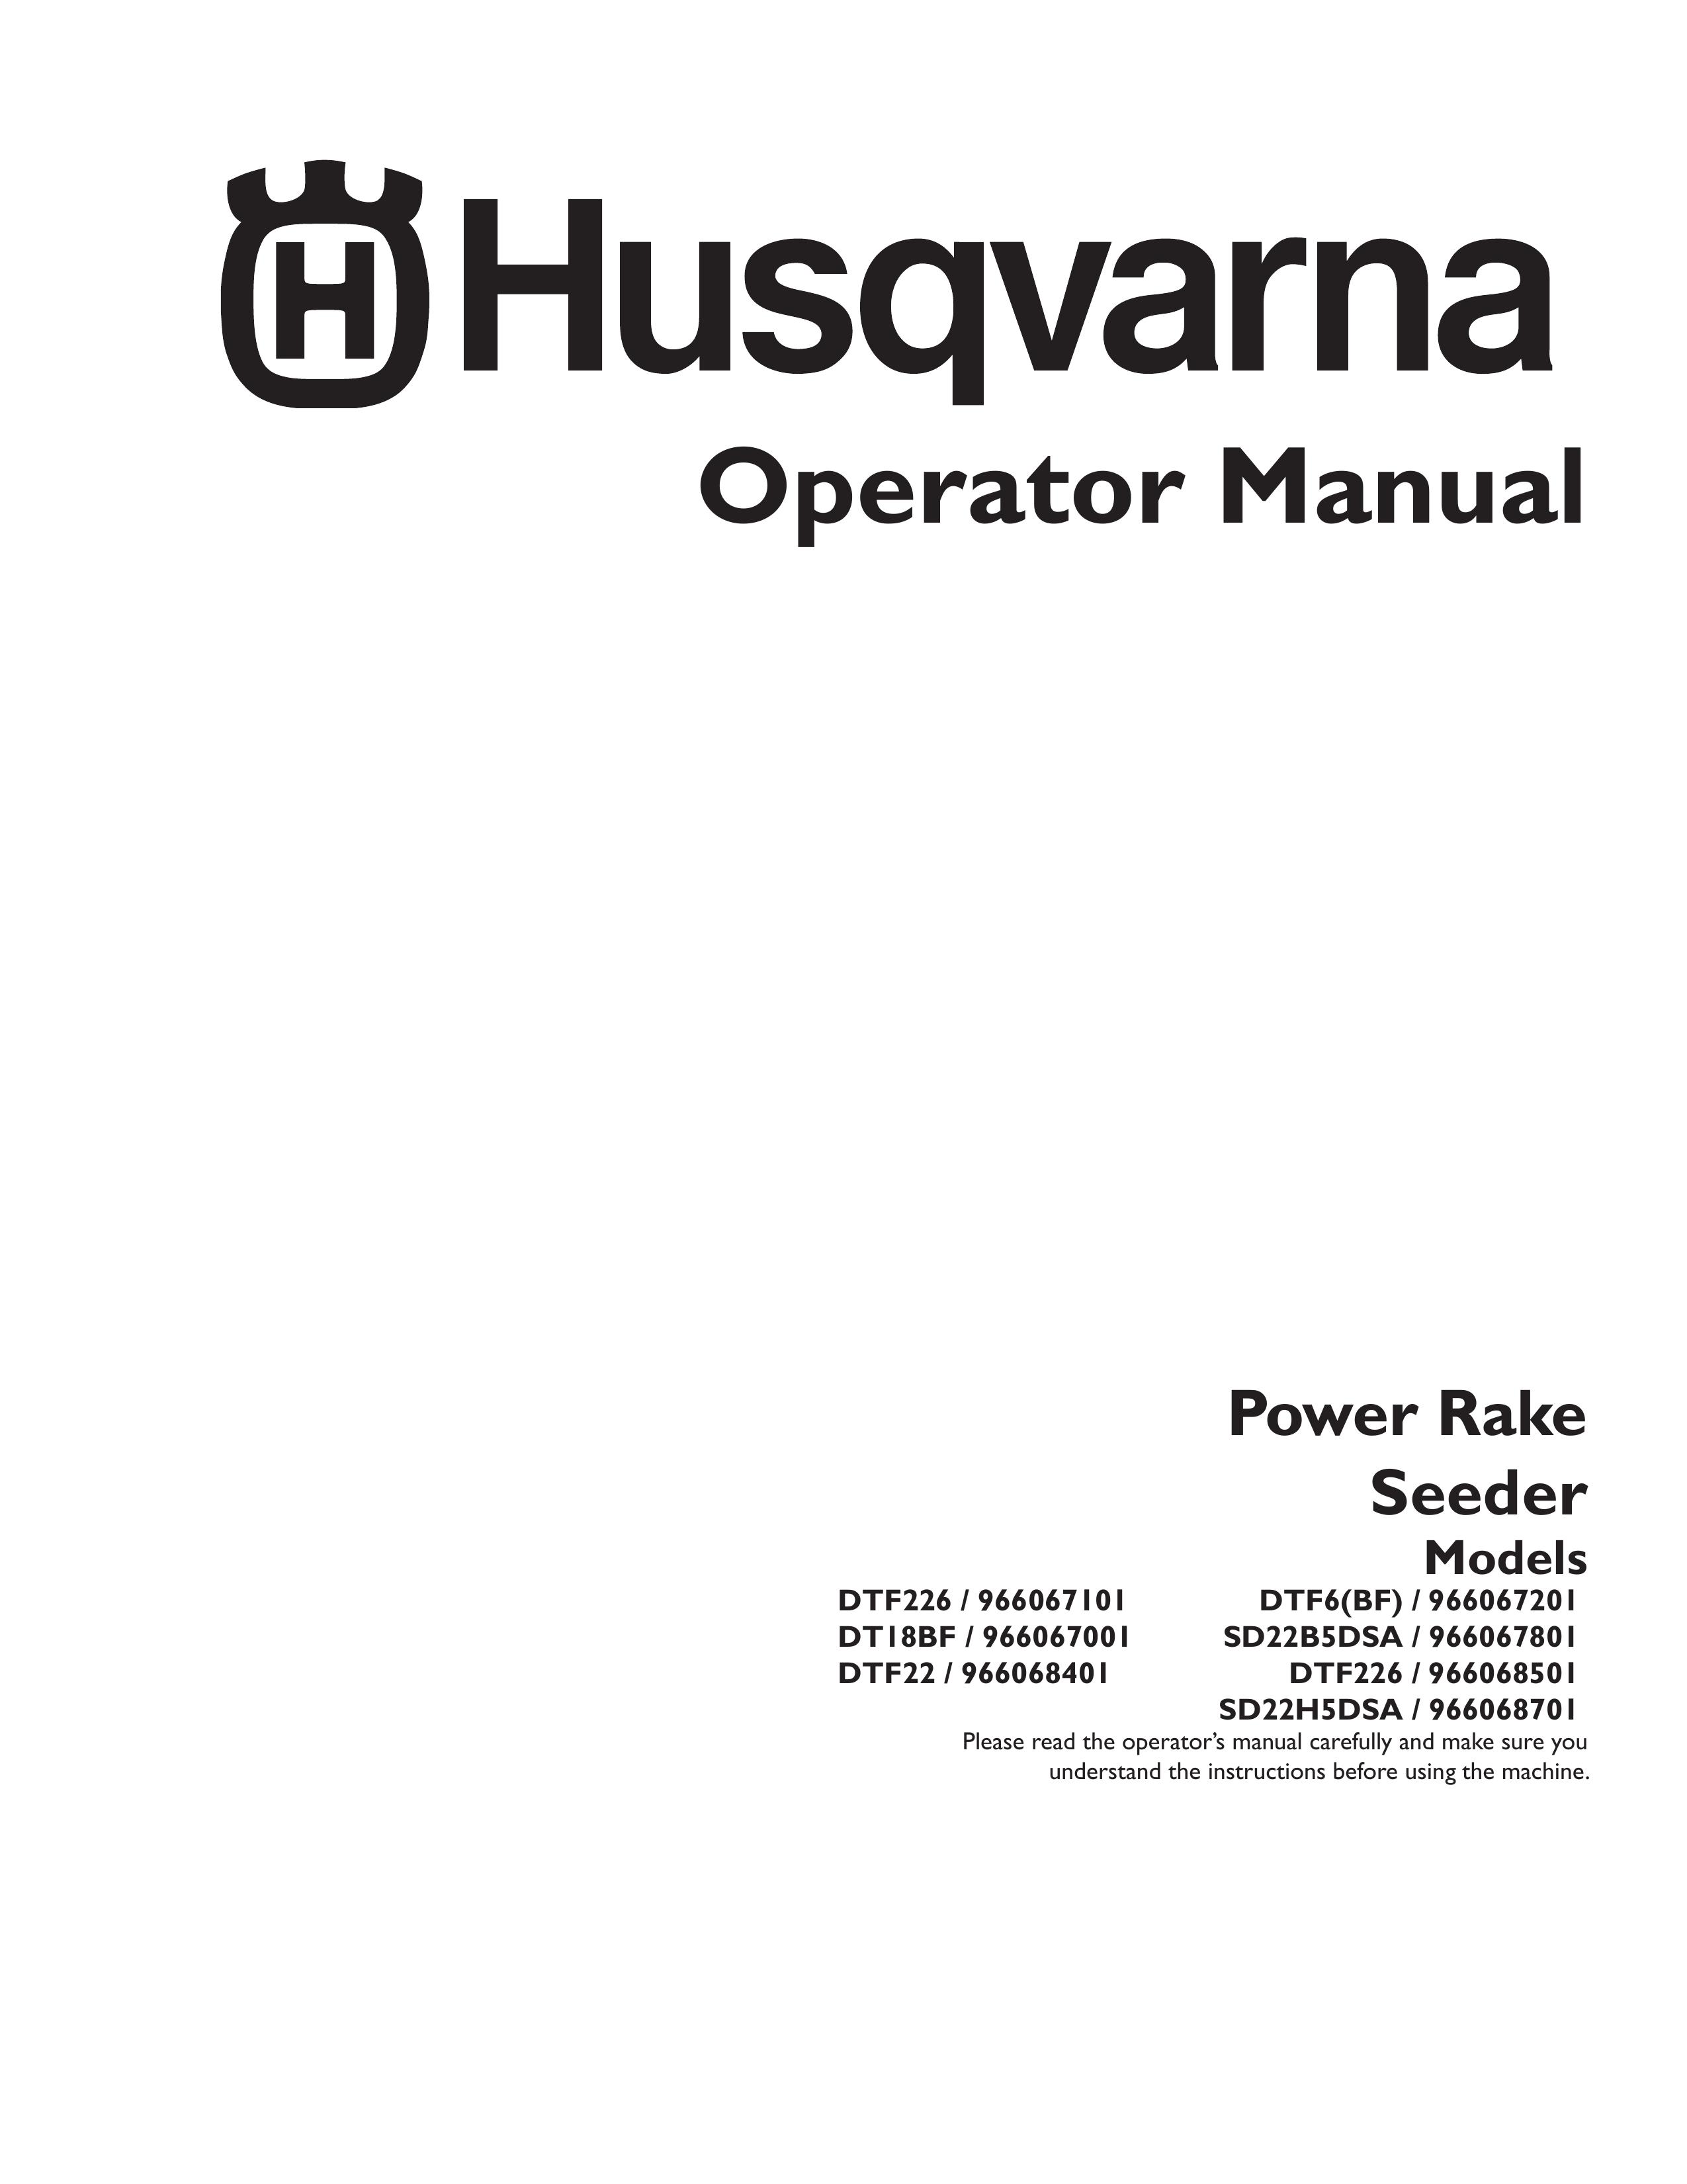 Husqvarna 966067801 Spreader User Manual